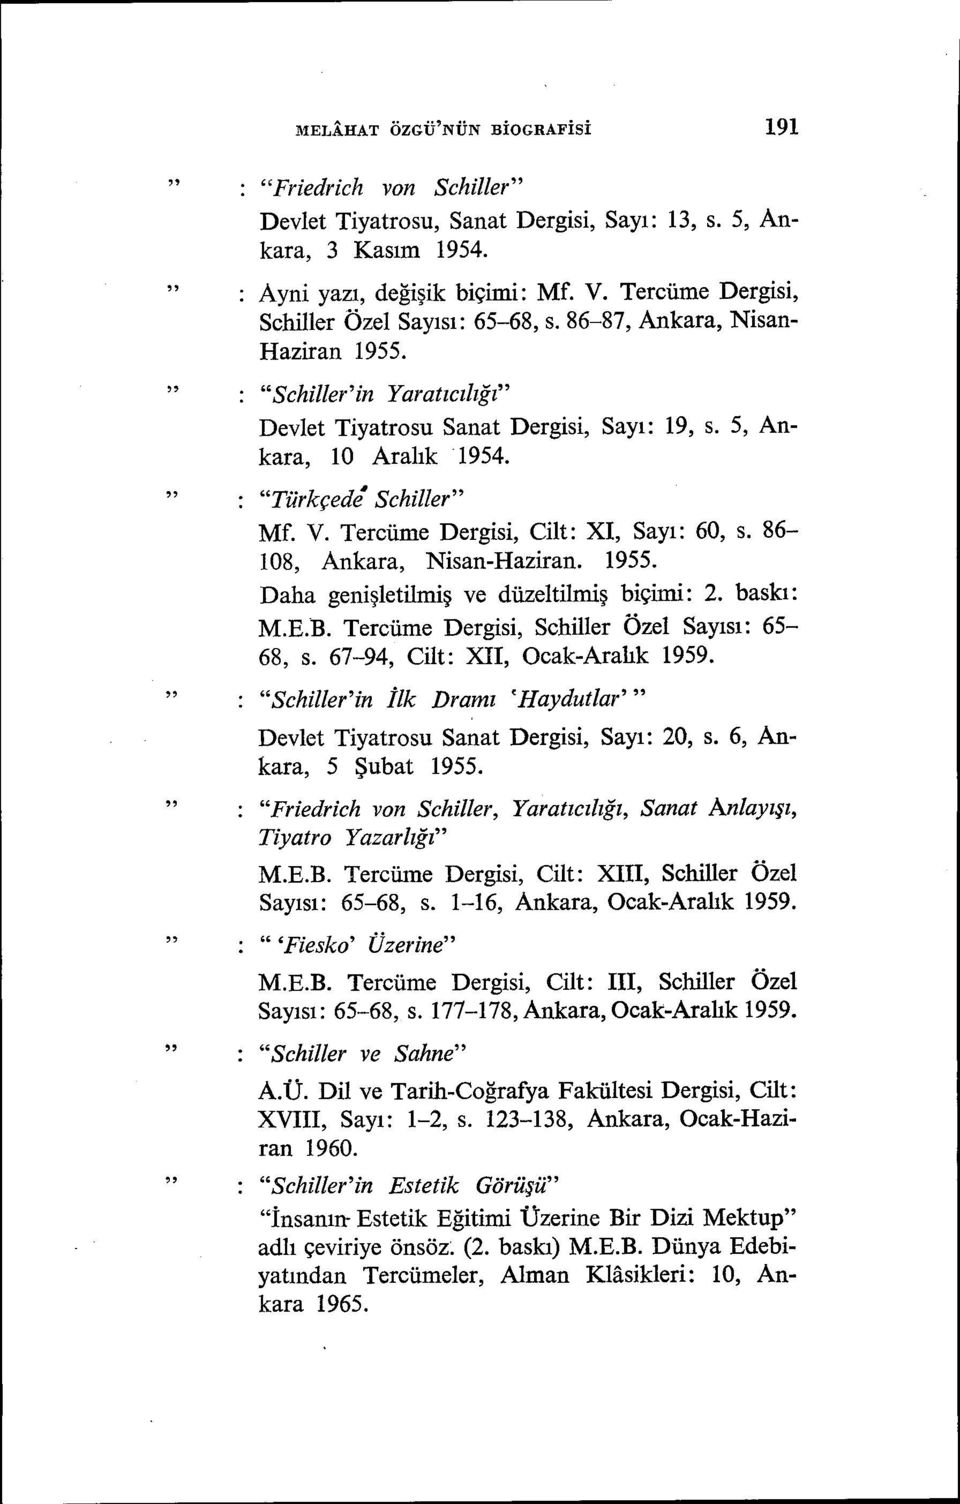 Türkçede Schiller Mf. V. Tercüme Dergisi, Cilt: XI, Sayı: 60, s. 86-108, Ankara, Nisan-Haziran. 1955. Daha genişletiliniş ve düzeltilmiş biçimi: 2. baskı: M.E.B.